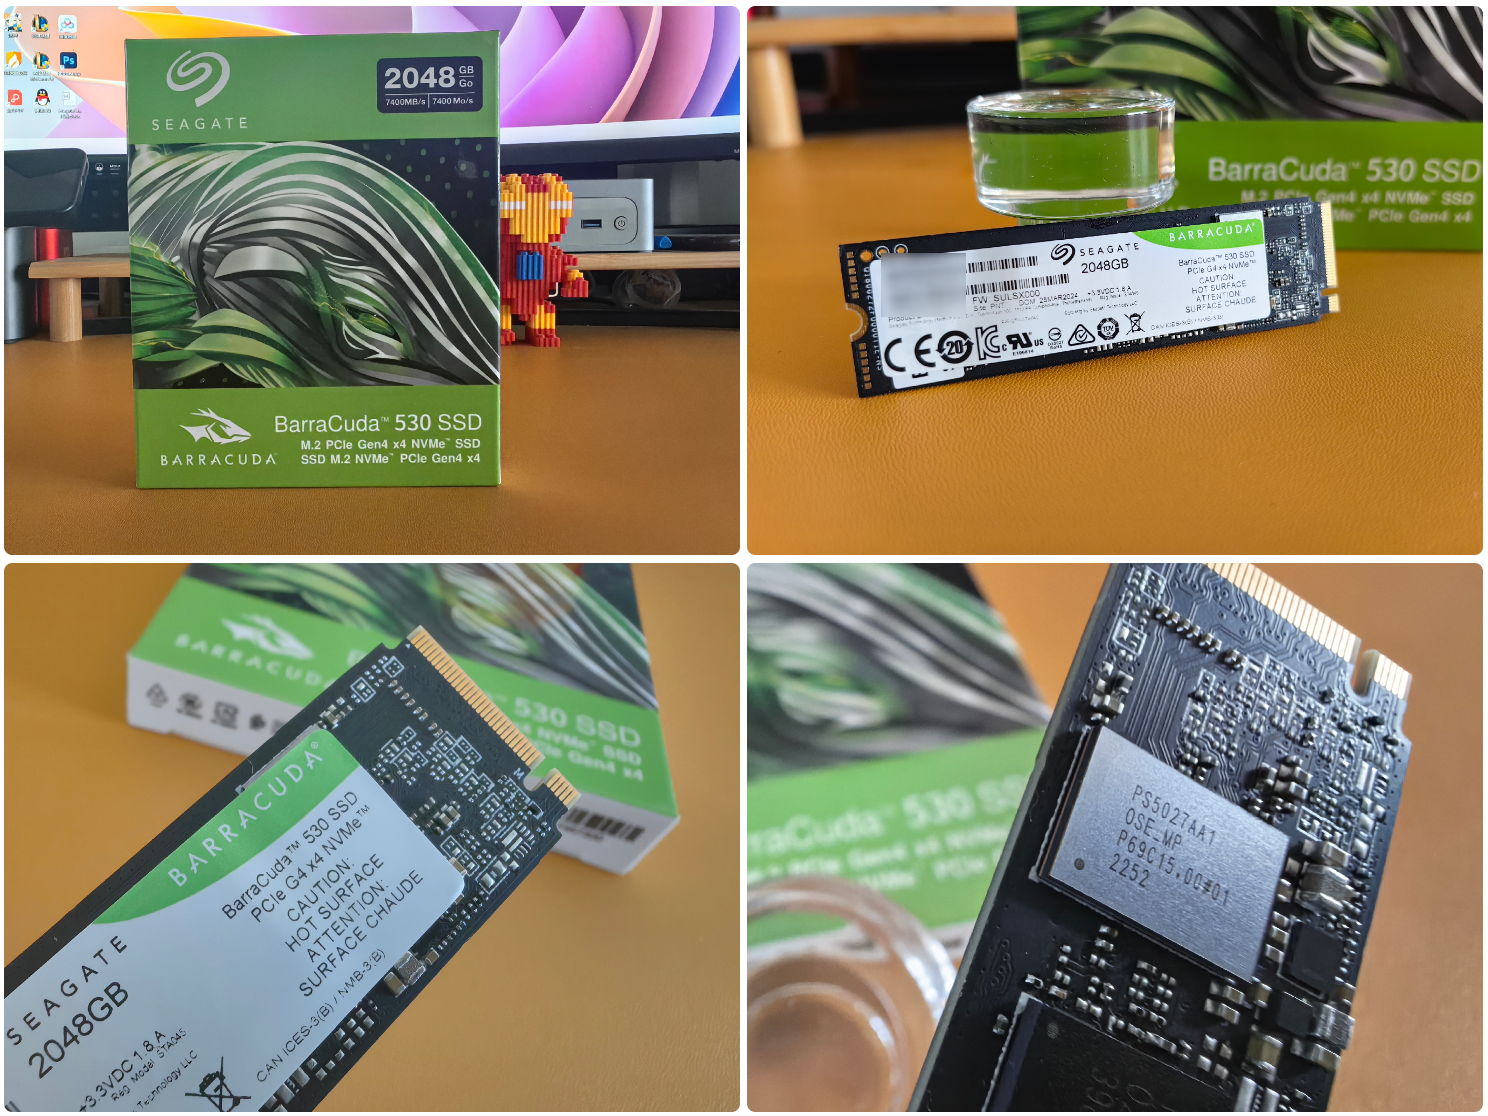 华硕 Z87 主板与 DDR3 内存：速度与力量的完美融合，电脑性能的极致追求  第8张